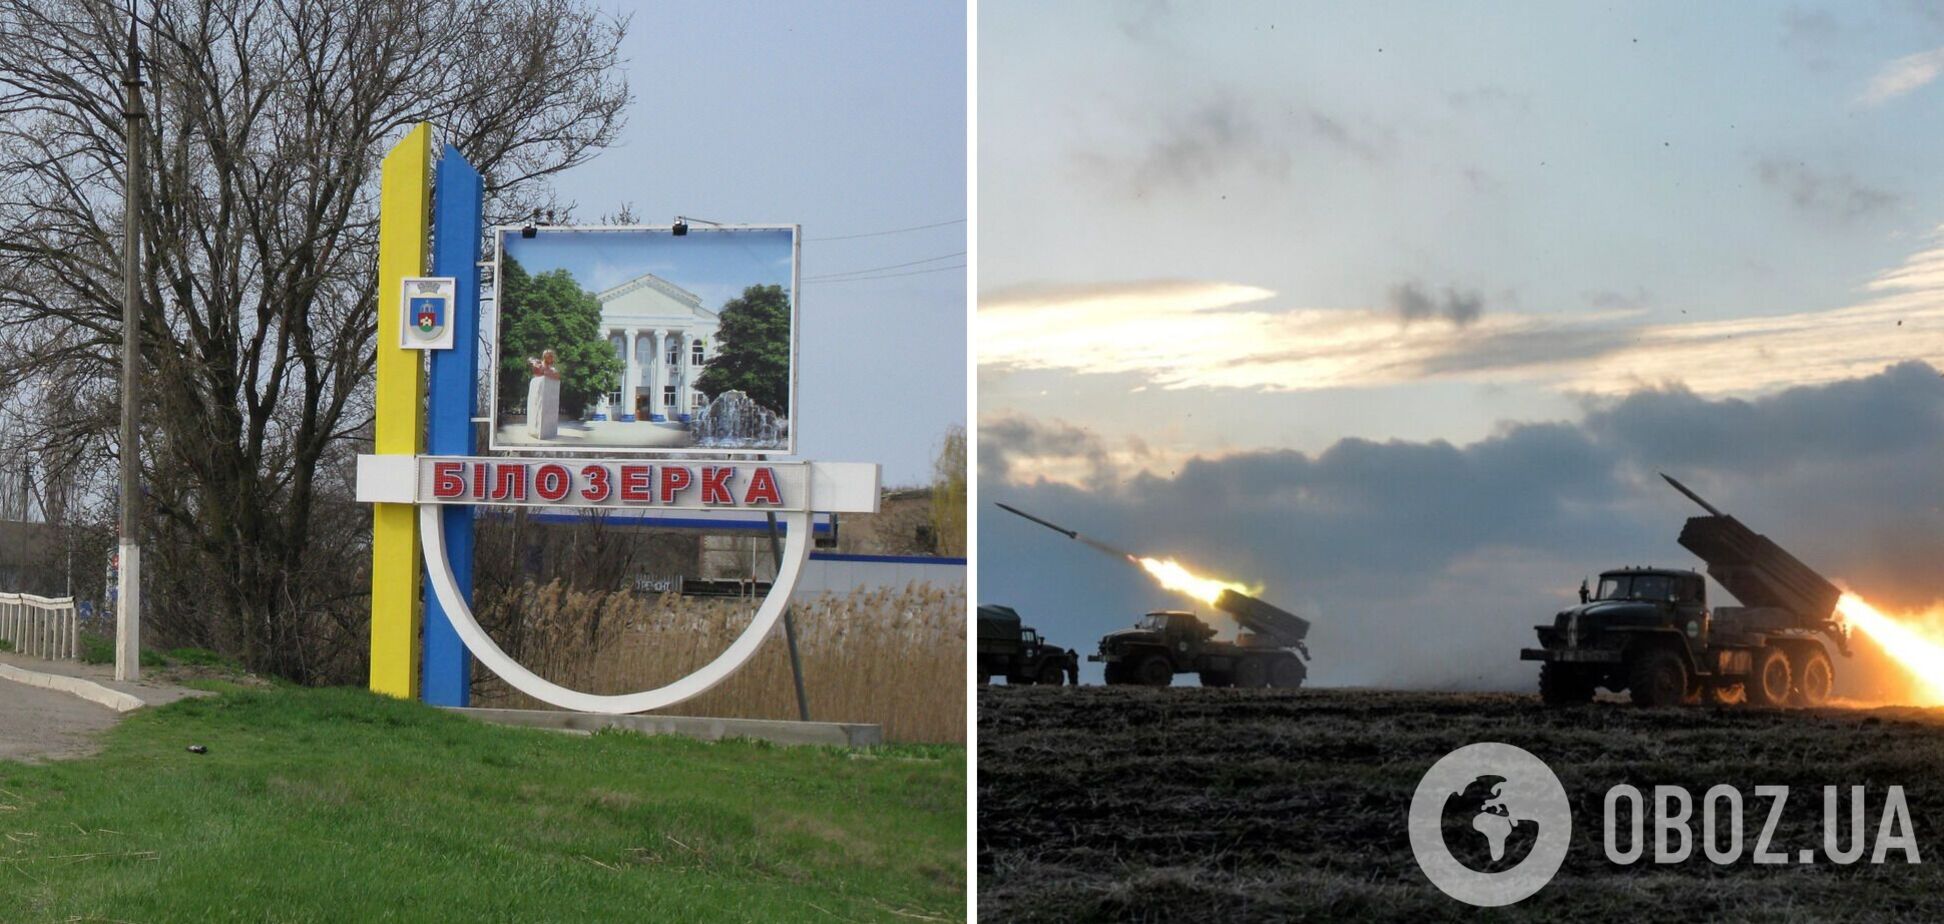 Российские военные обстреляли Белозерку на Херсонщине: есть погибшие и раненые